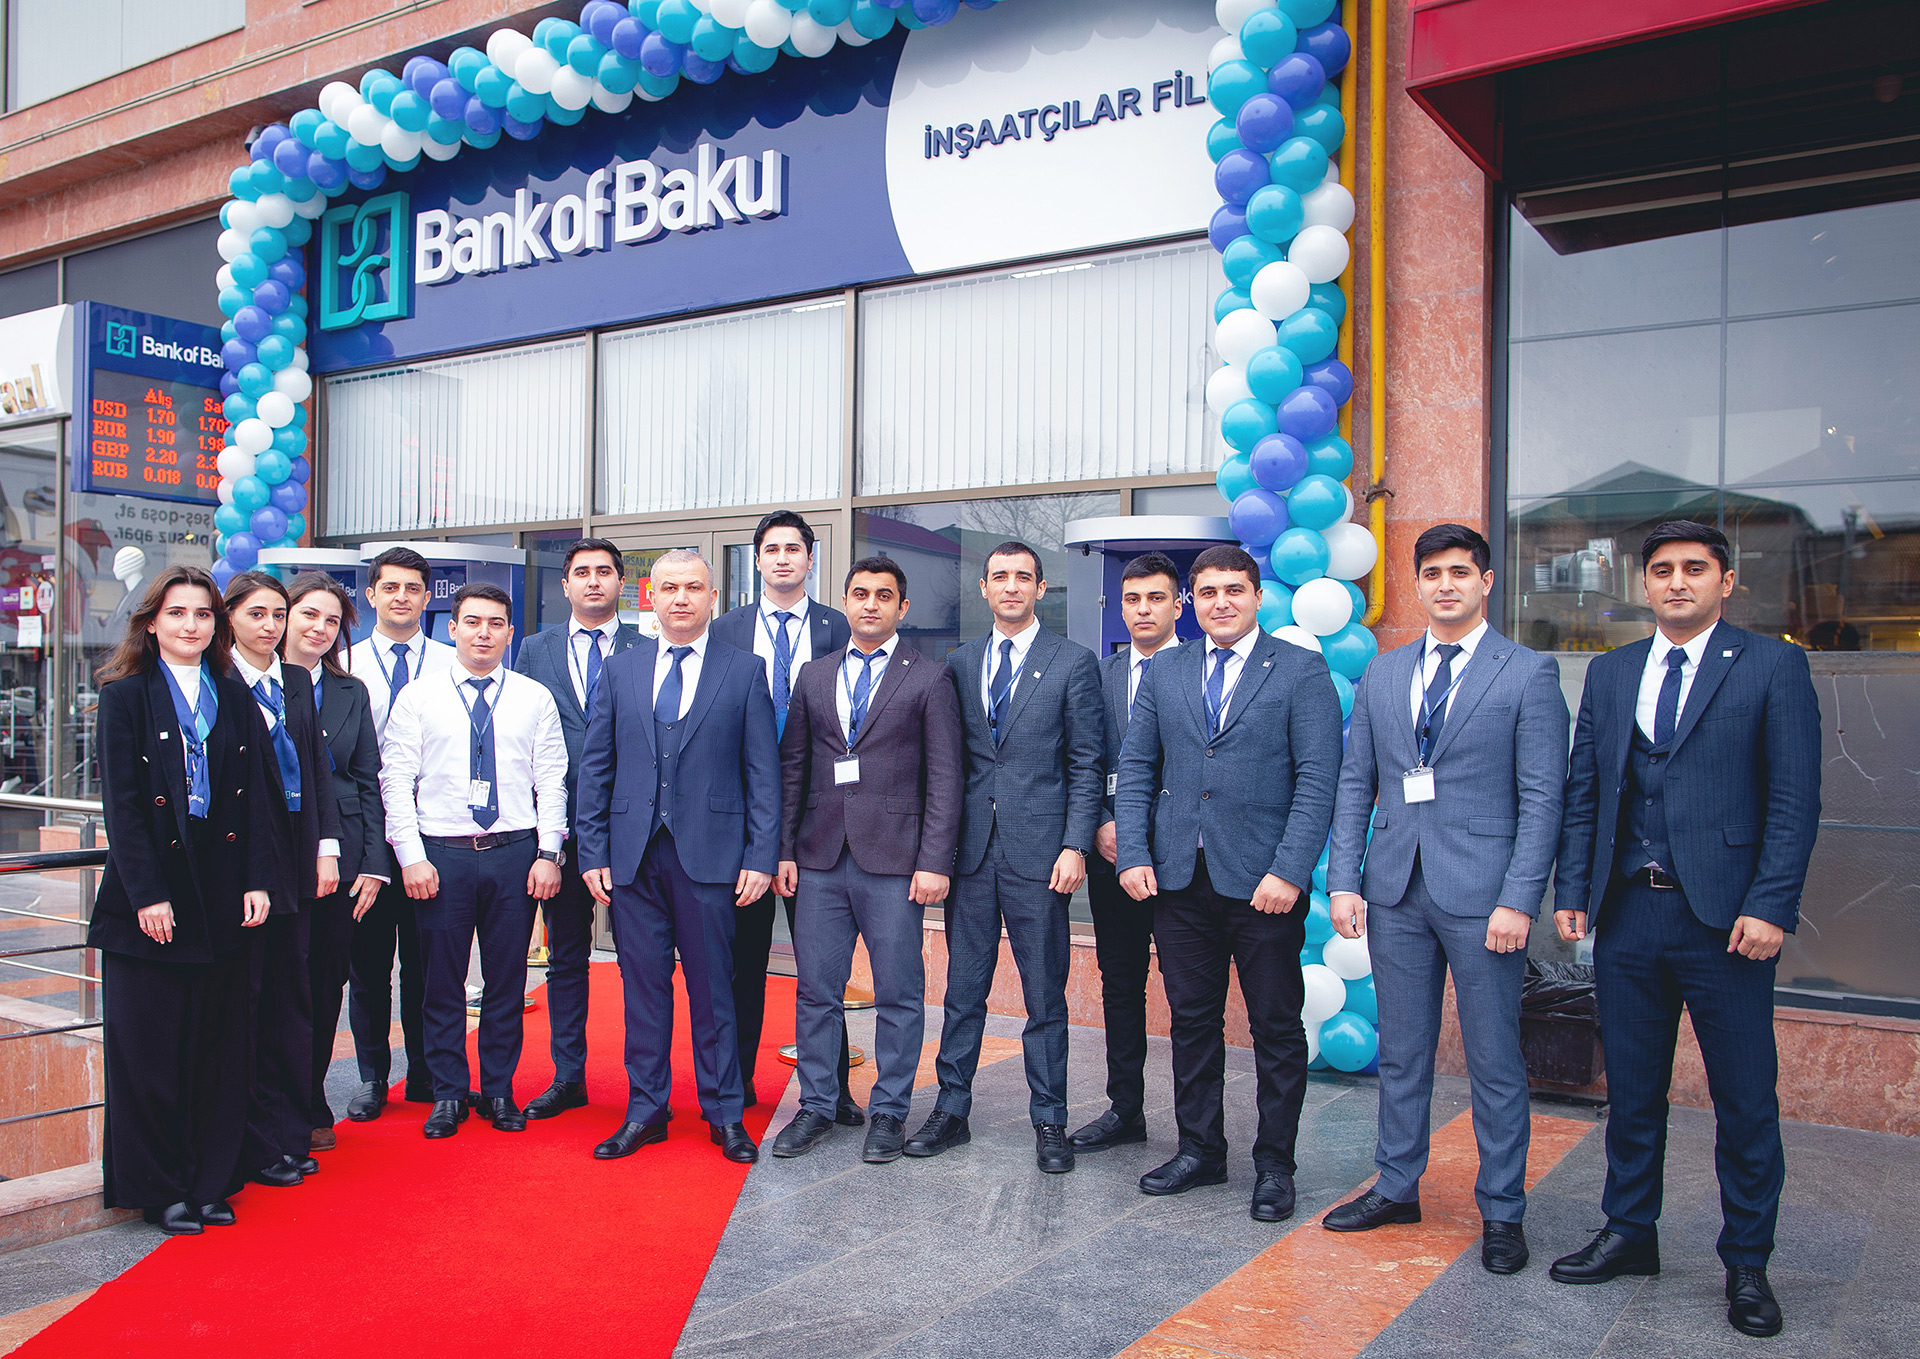 Bank of Baku-nun İnşaatçılar filialı açıldı!